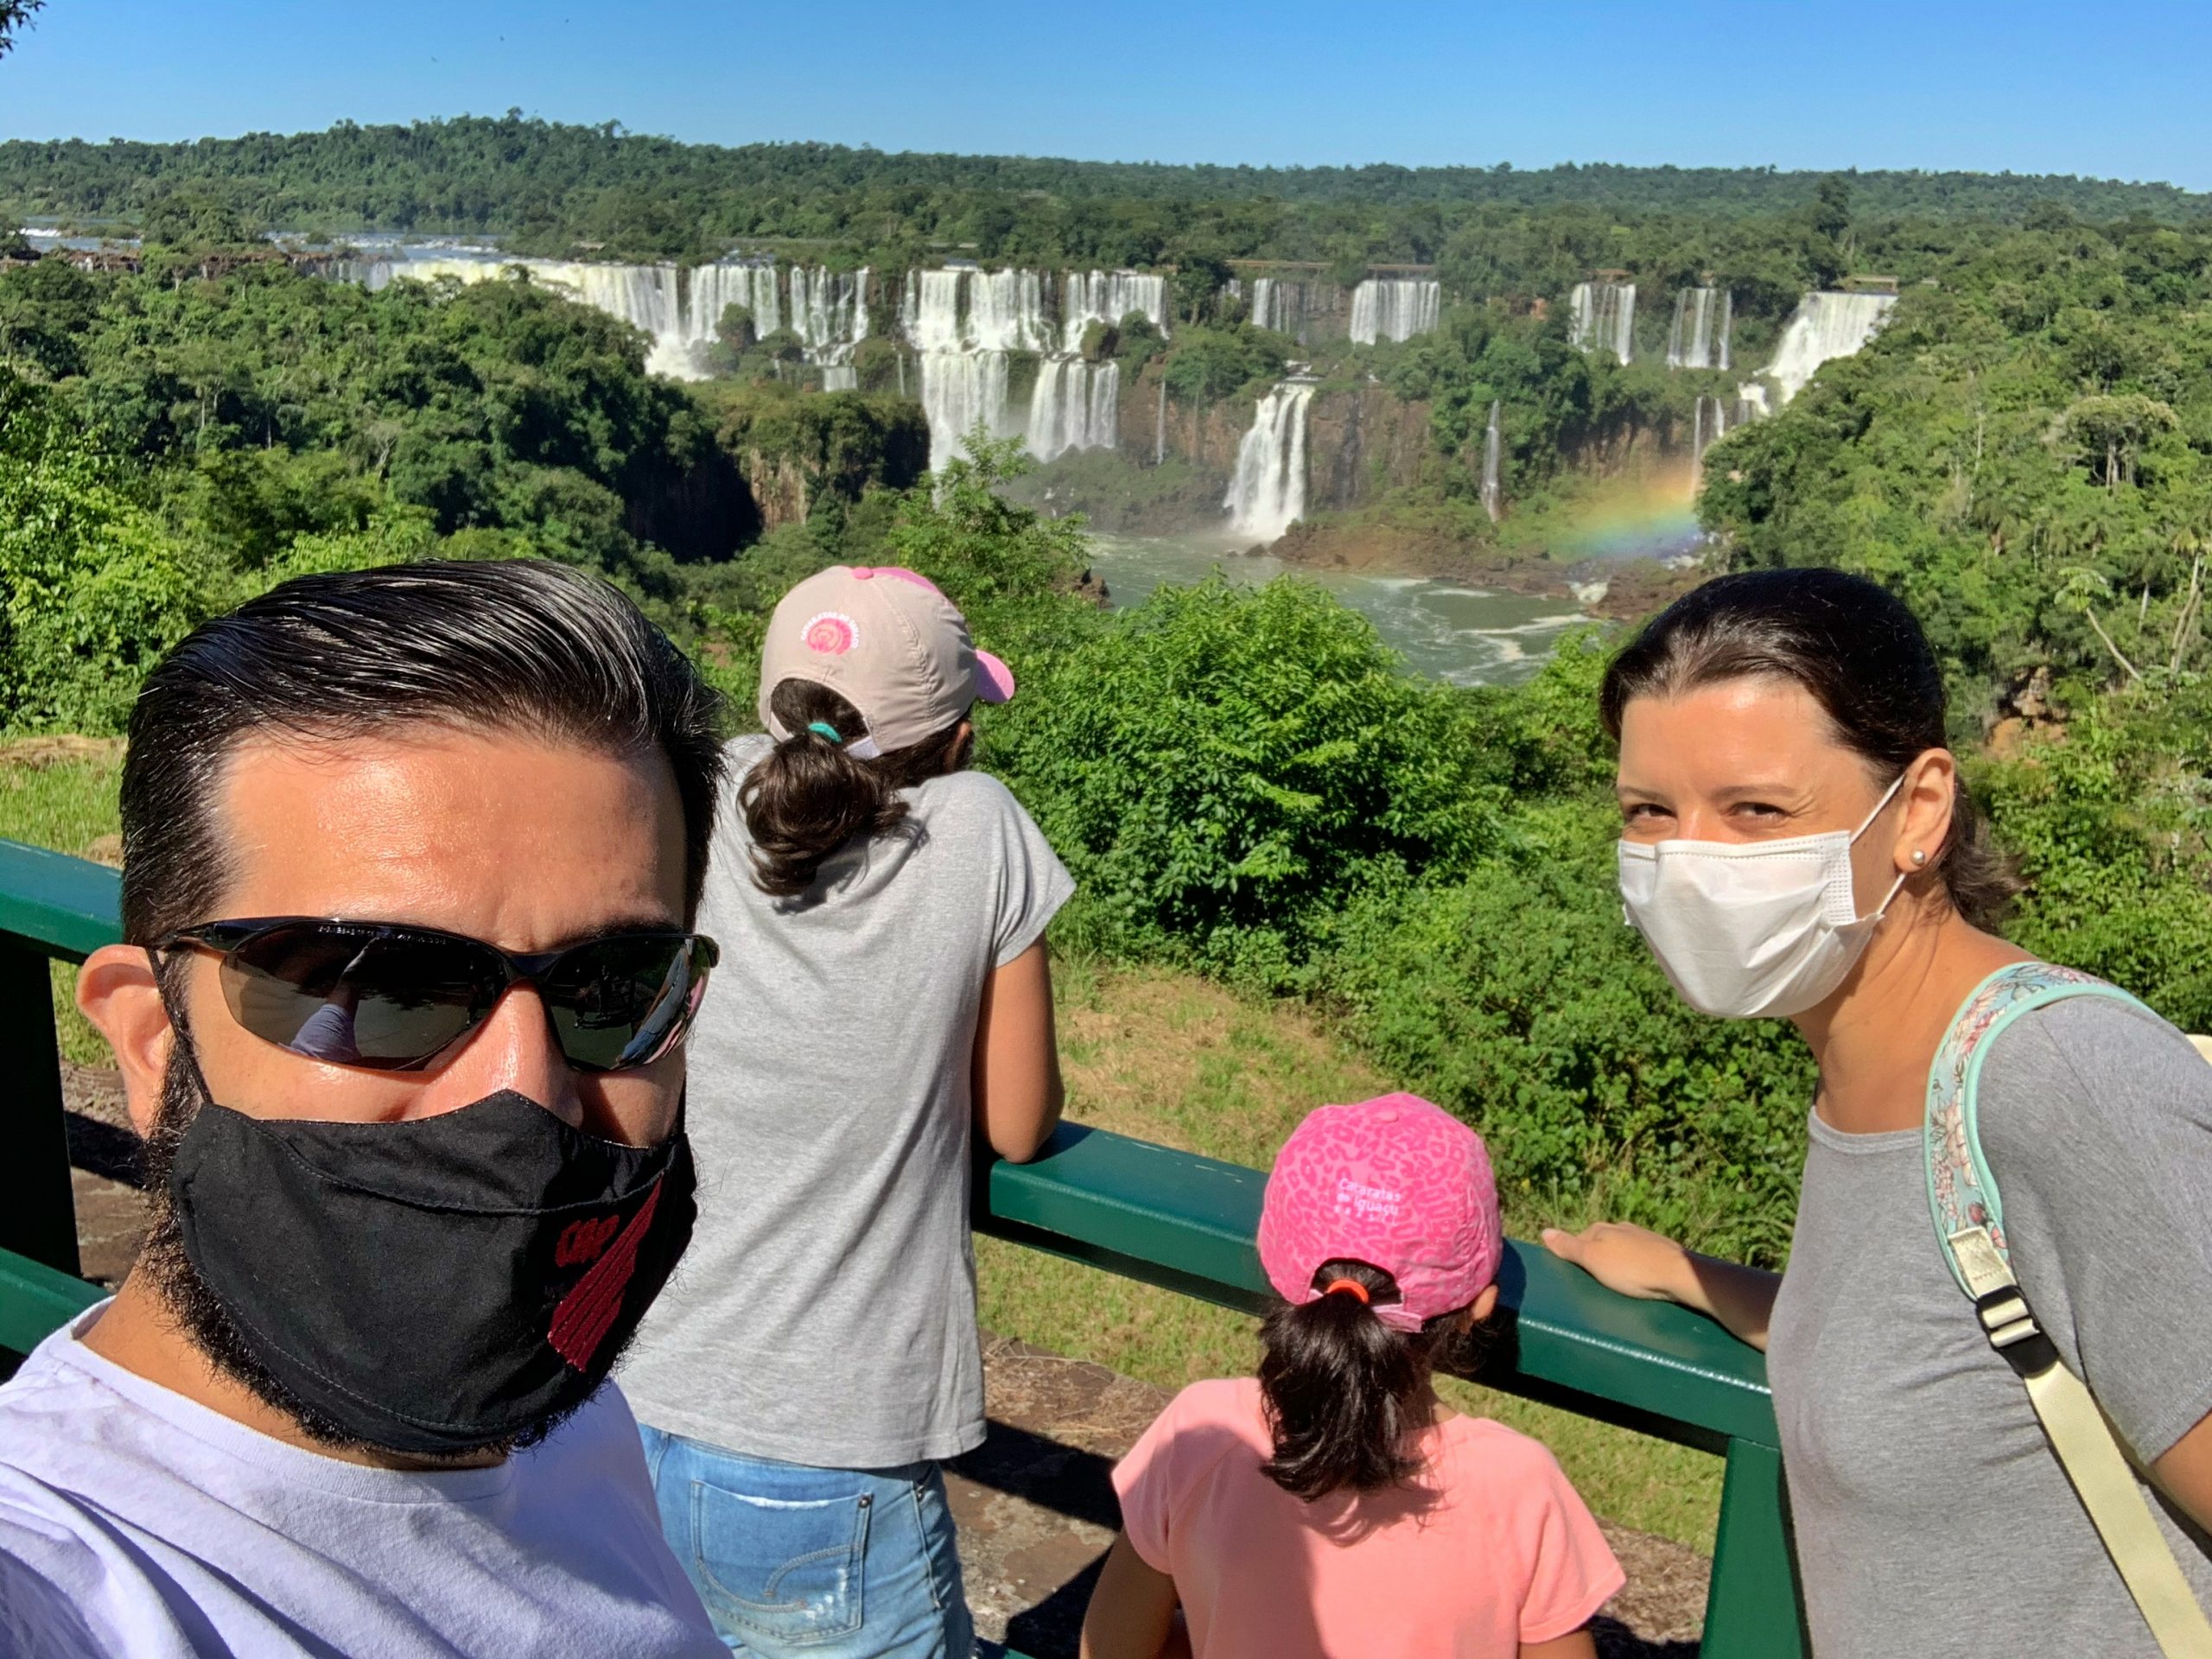 Nesse mês de fevereiro/21, nos visitamos Foz do Iguaçu com as crianças (Ana Júlia, aos 6 e Manuela, aos 12). Fizemos vários passeios legais. Abaixo eu conto resumidamente como foi visitar as Cataratas do Iguaçu com crianças.